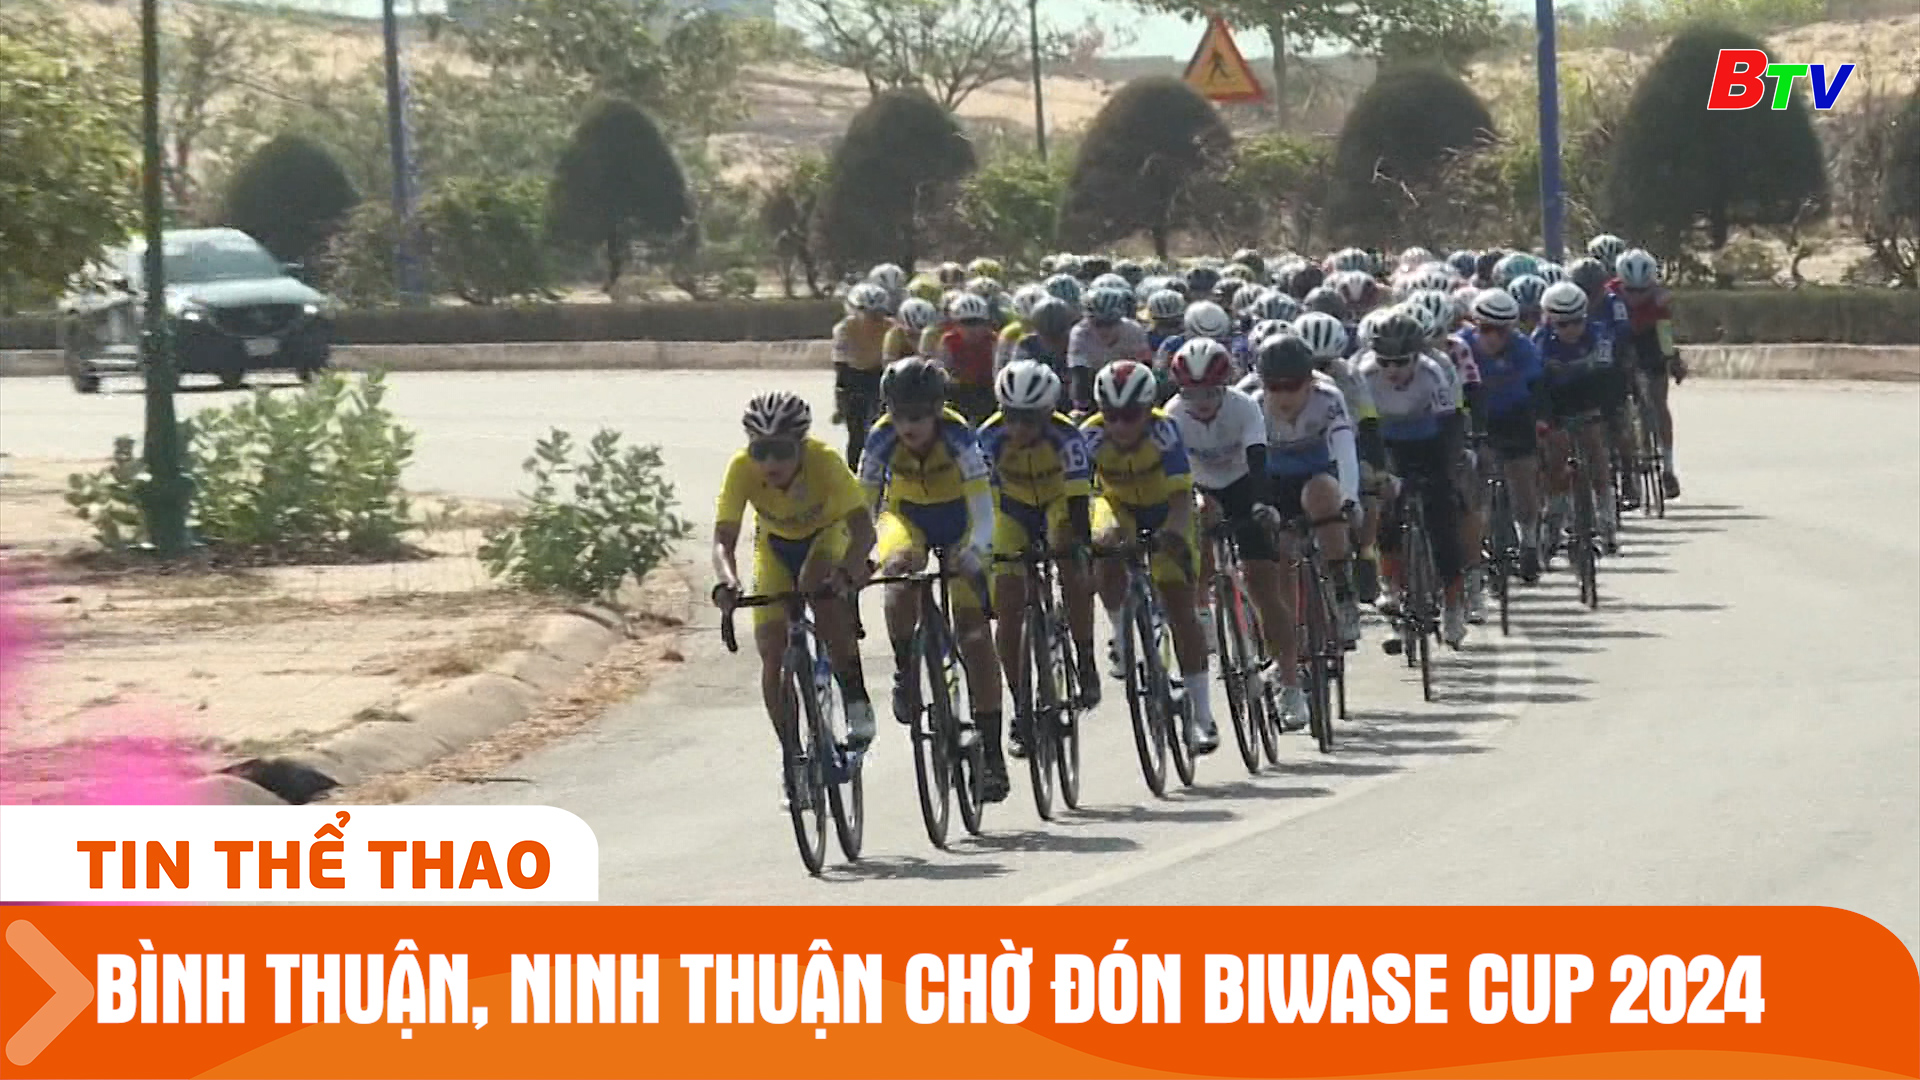 Tỉnh Bình Thuận, Ninh Thuận sẵn sàng chào đón Giải xe đạp nữ quốc tế Biwase Cup 2024 | Tin Thể thao 24h	